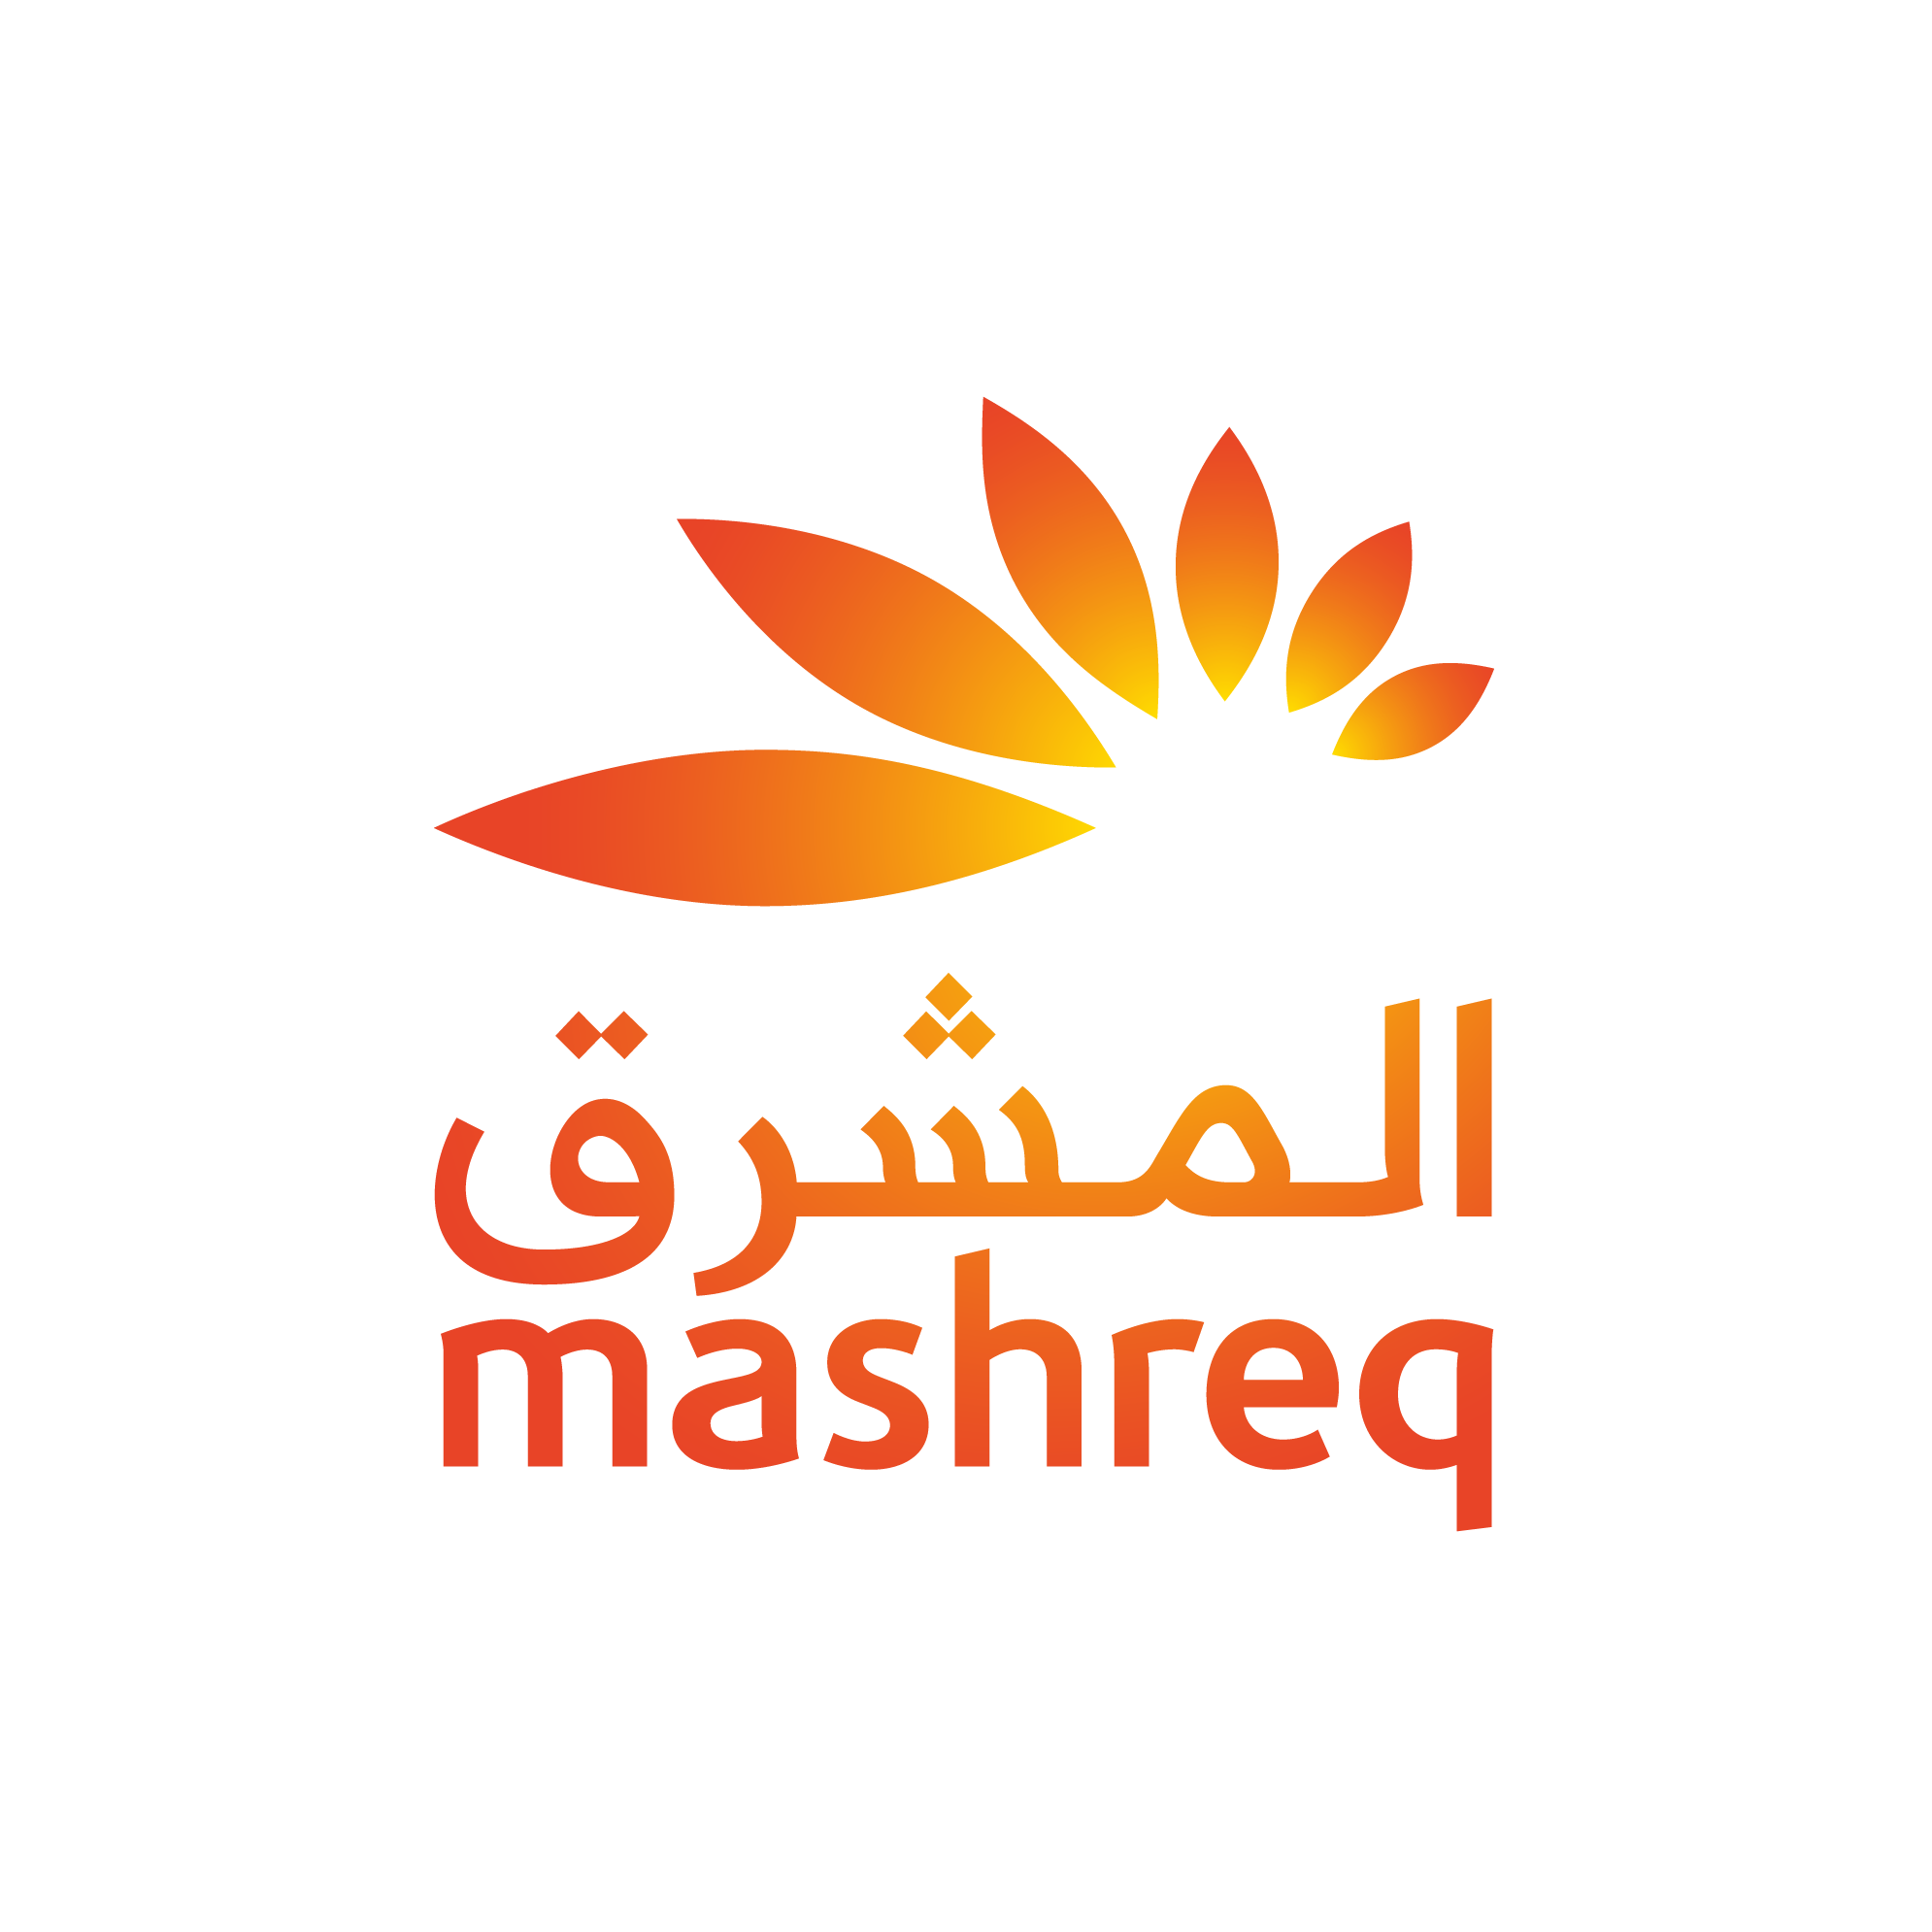 Mashreq-logo